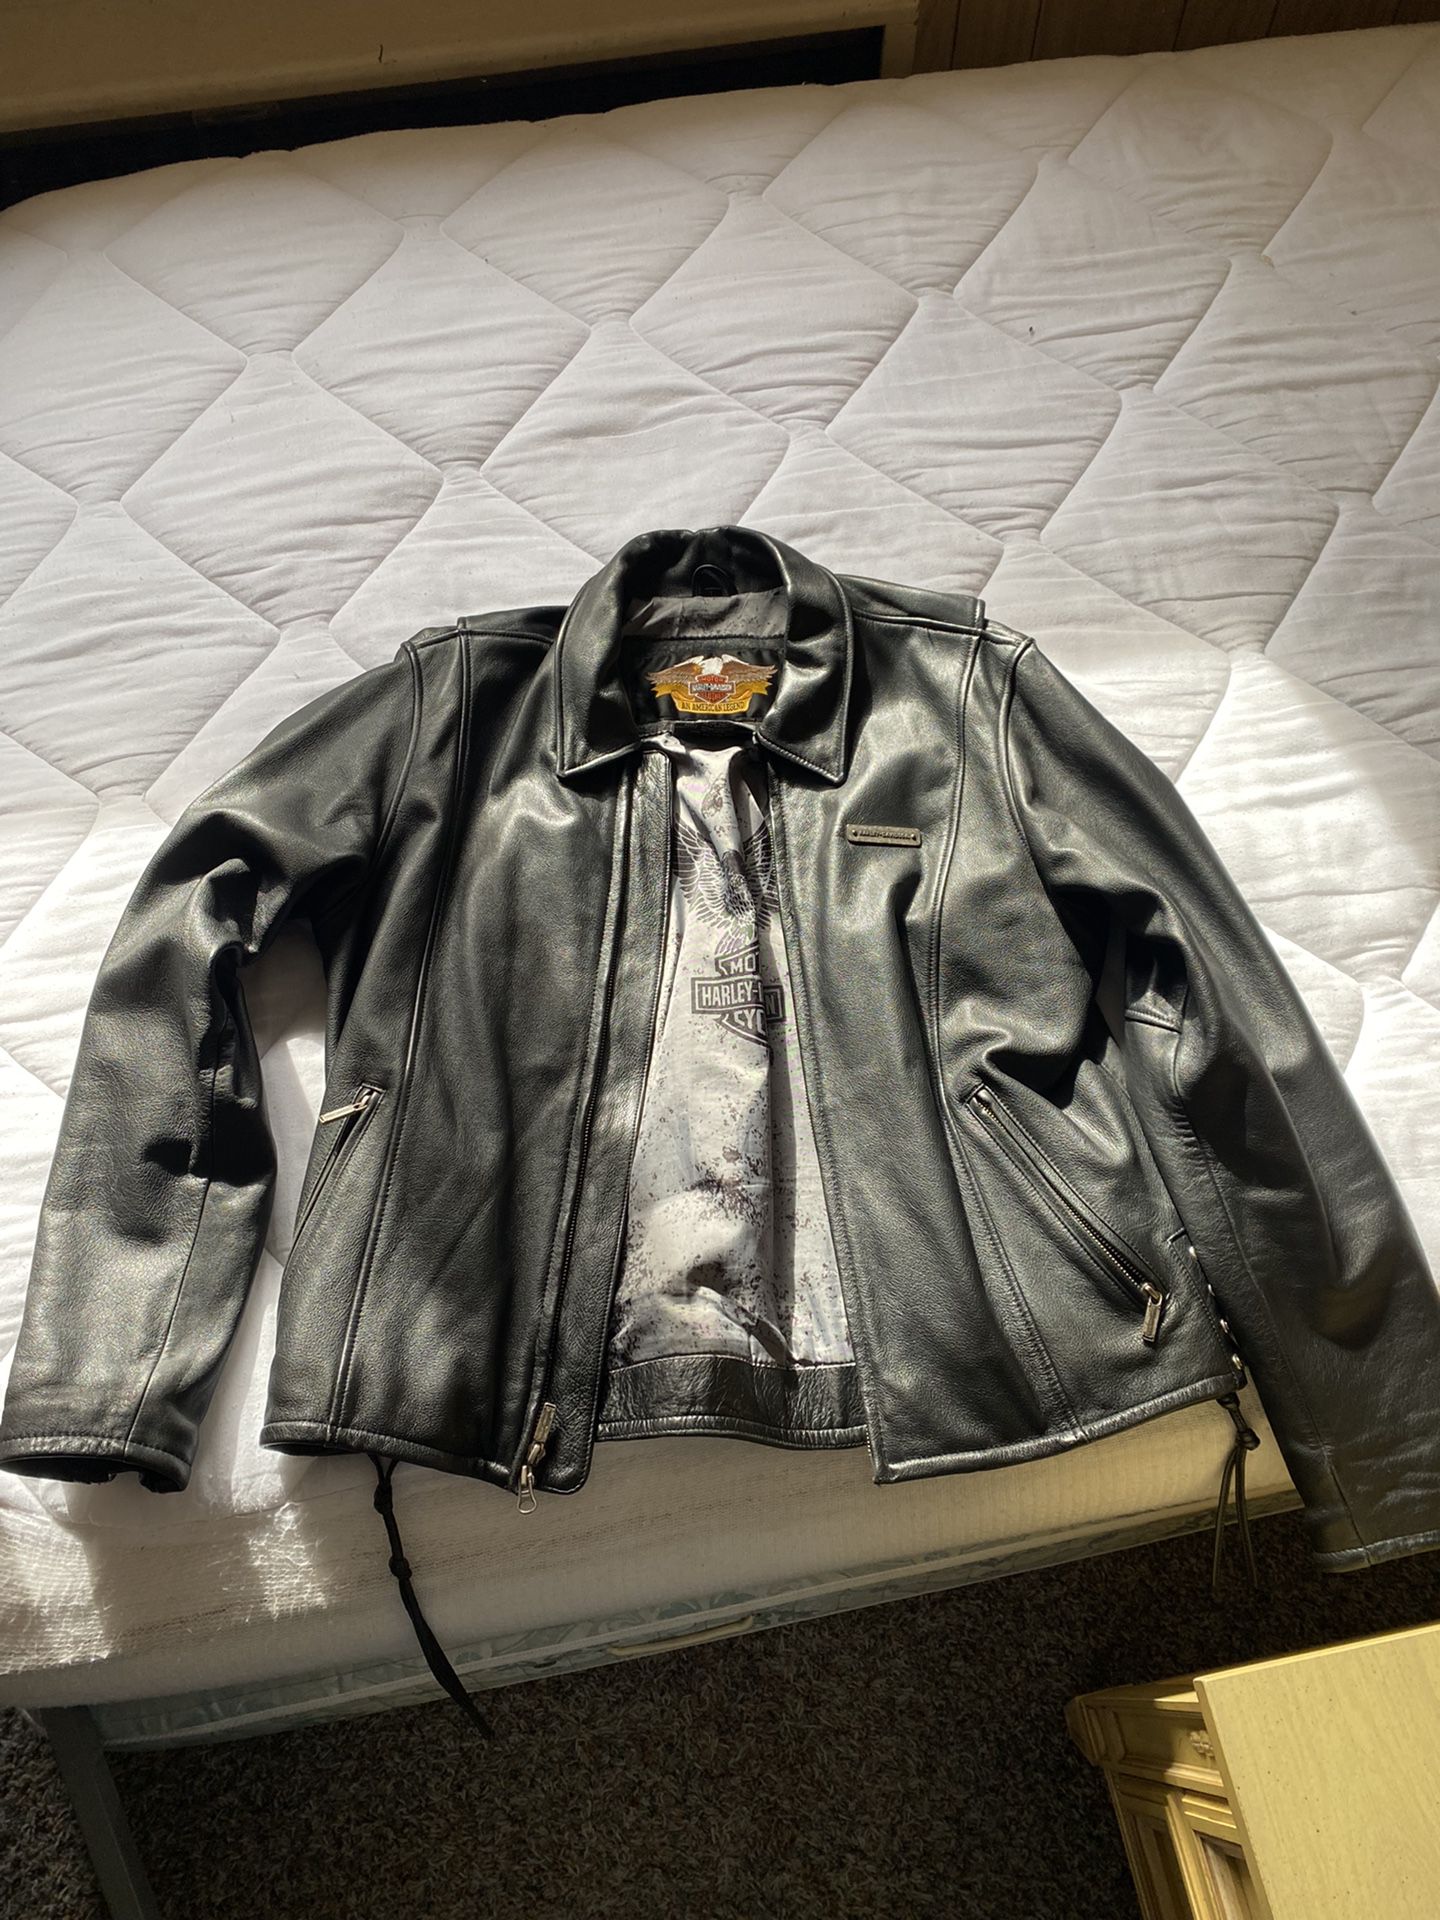 Harley Davidson leather coat and vest